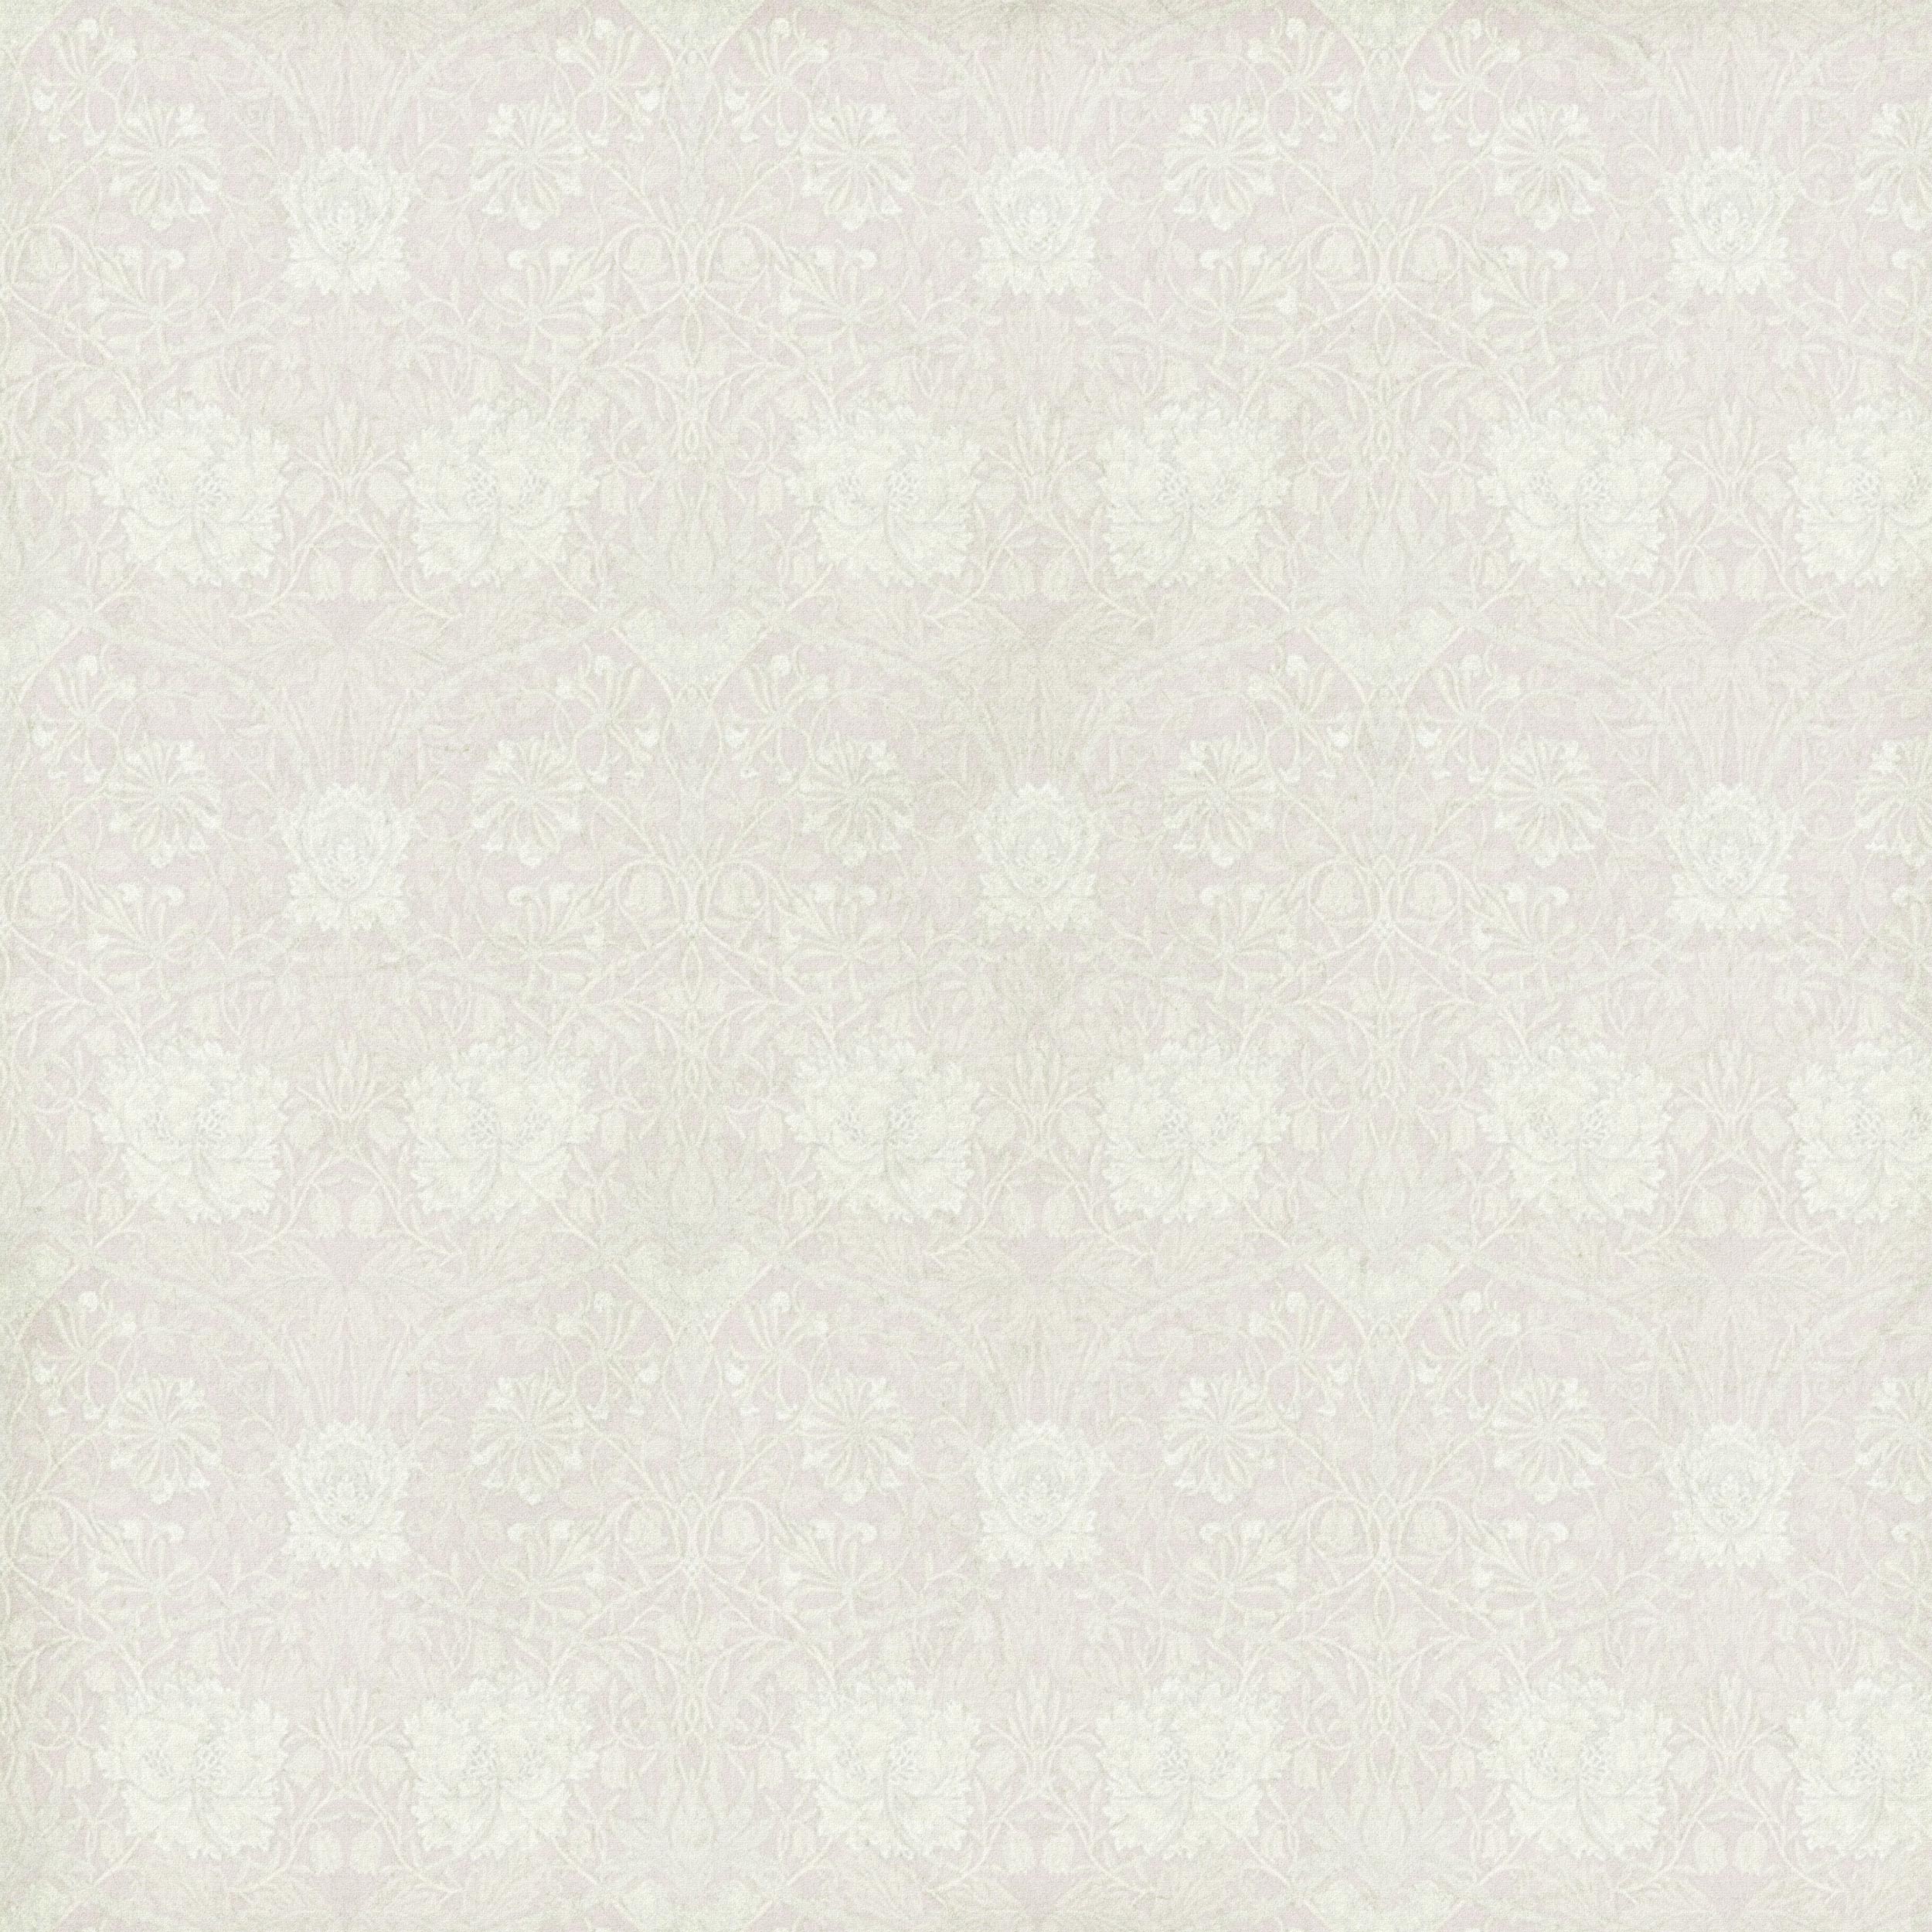 壁紙 背景イラスト 花の模様 柄 パターン No 260 エレガント装飾 布生地